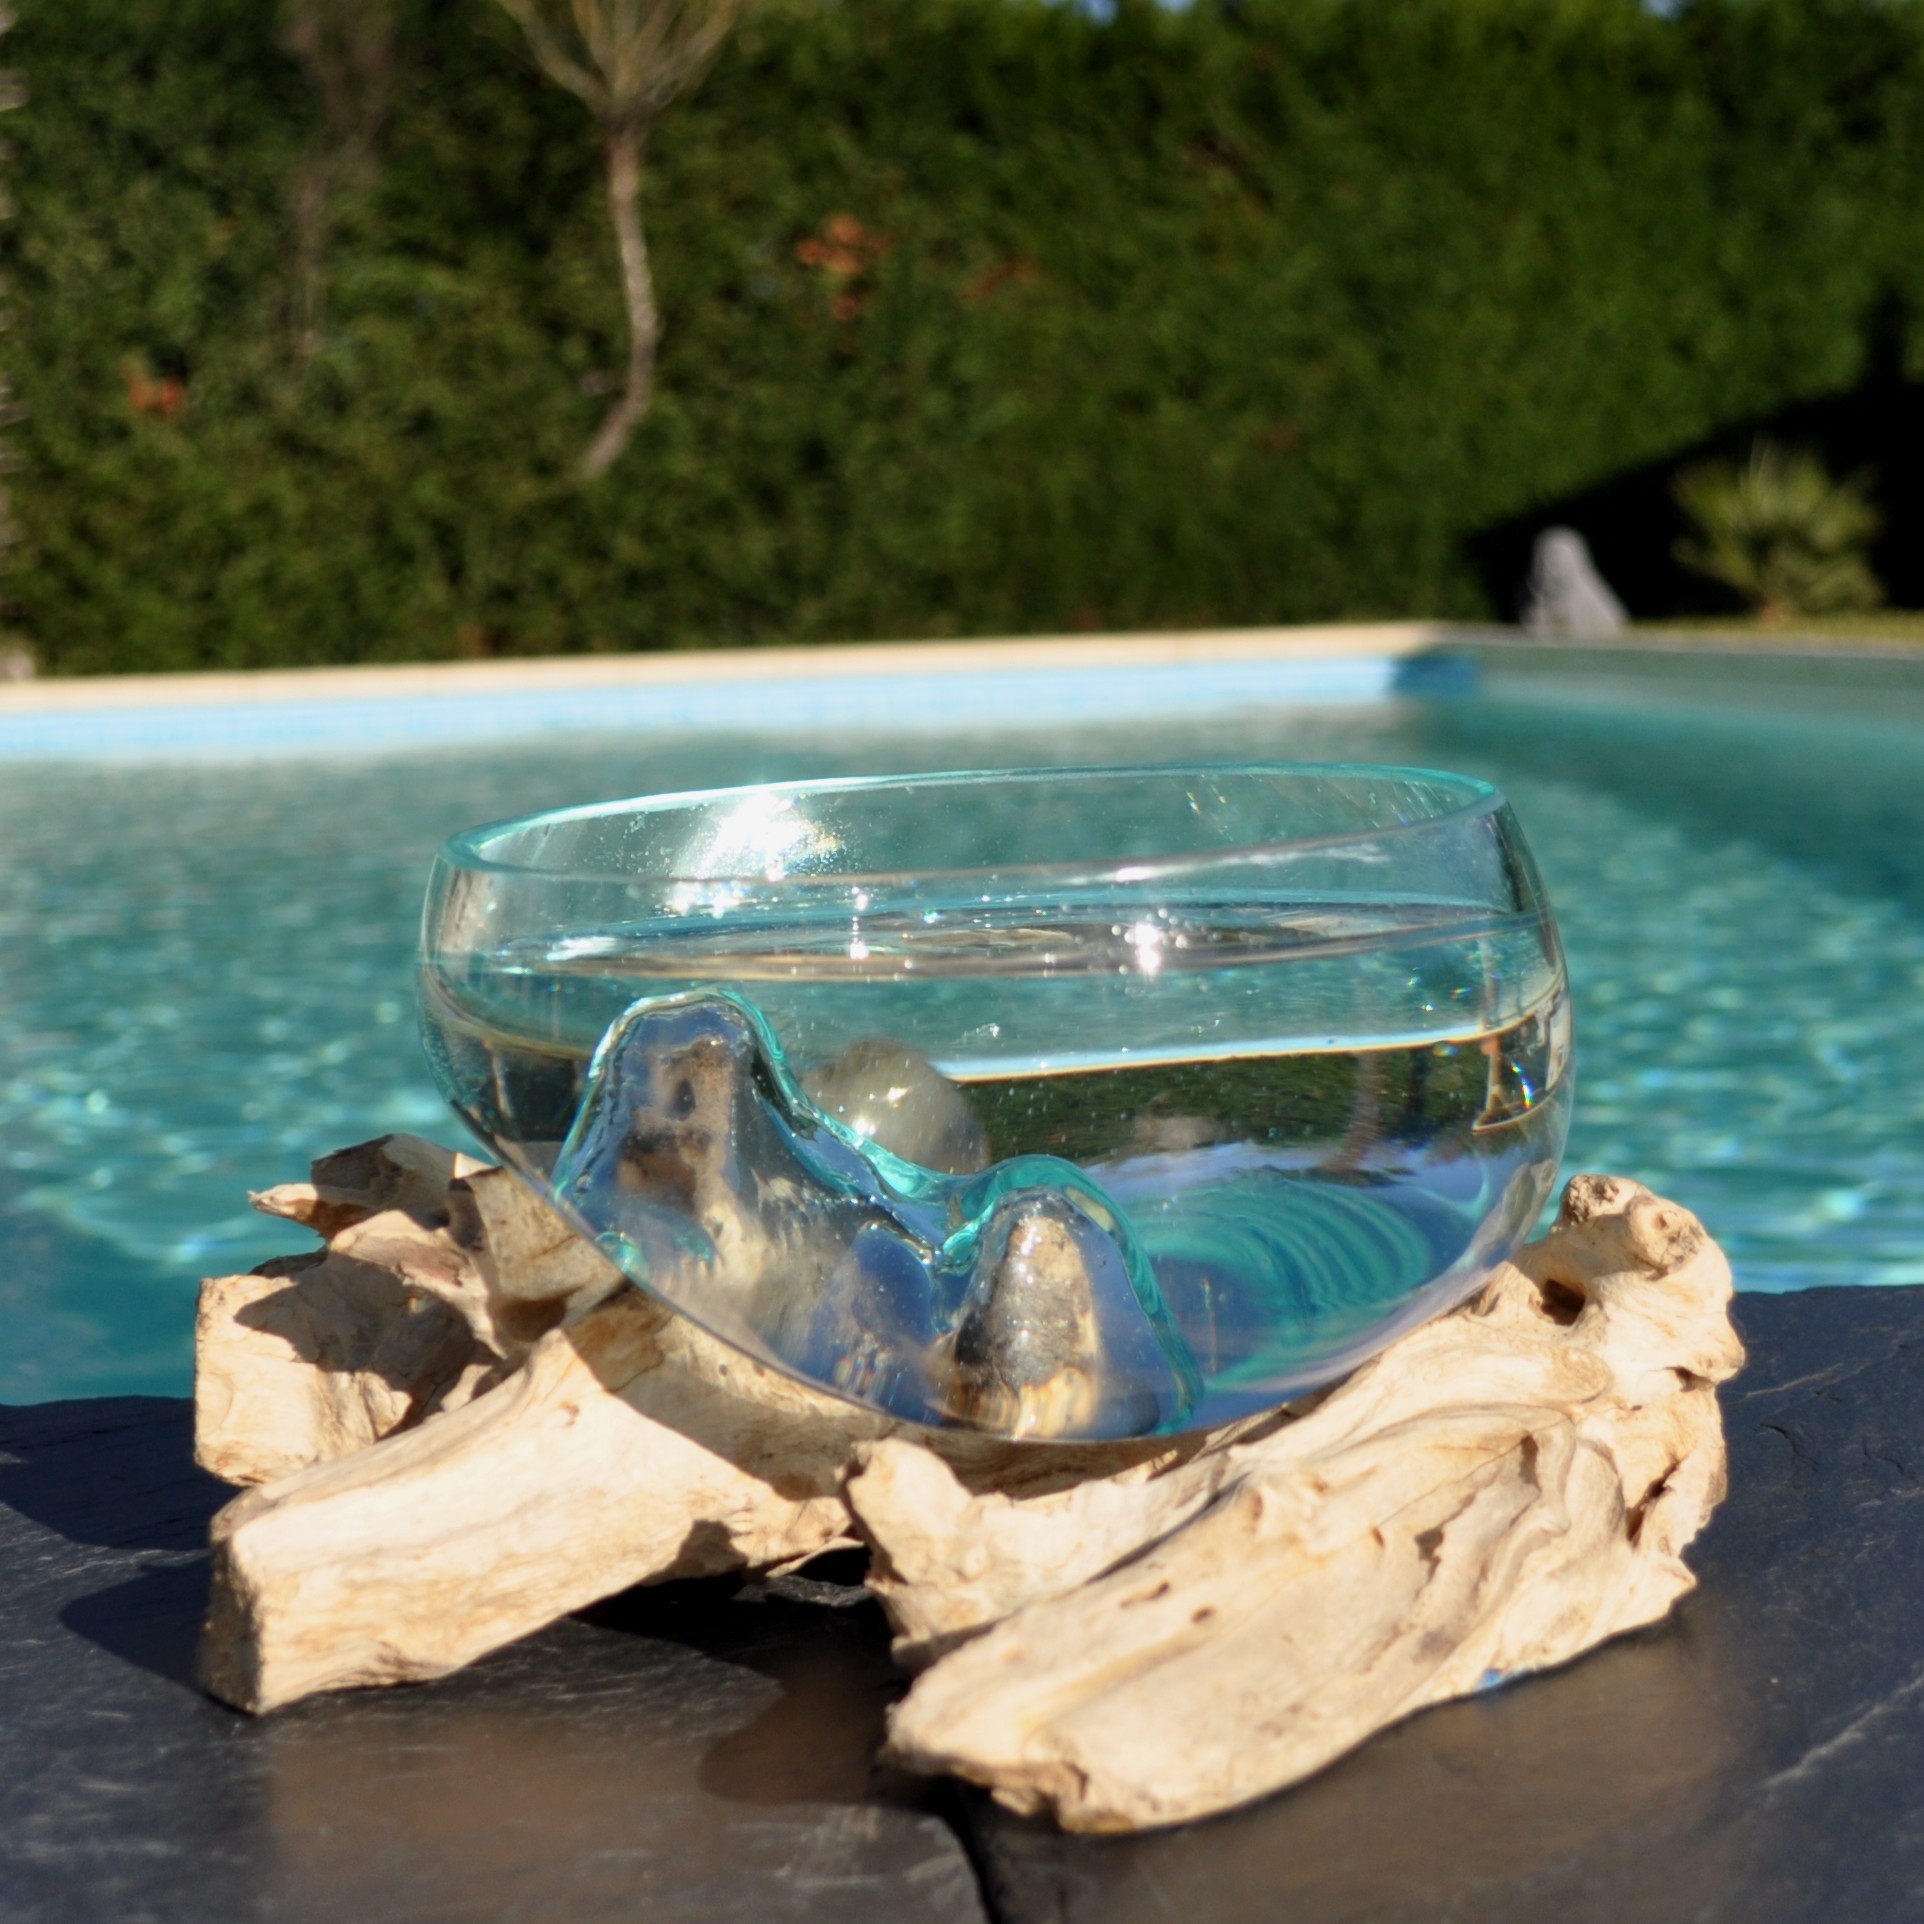 Air Plant Terrarium Vase en bois flotté en verre fondu Pierres de haricot  de jade Guérison Chakra Pierres précieuses 5in Le porte-bonheur -   Canada